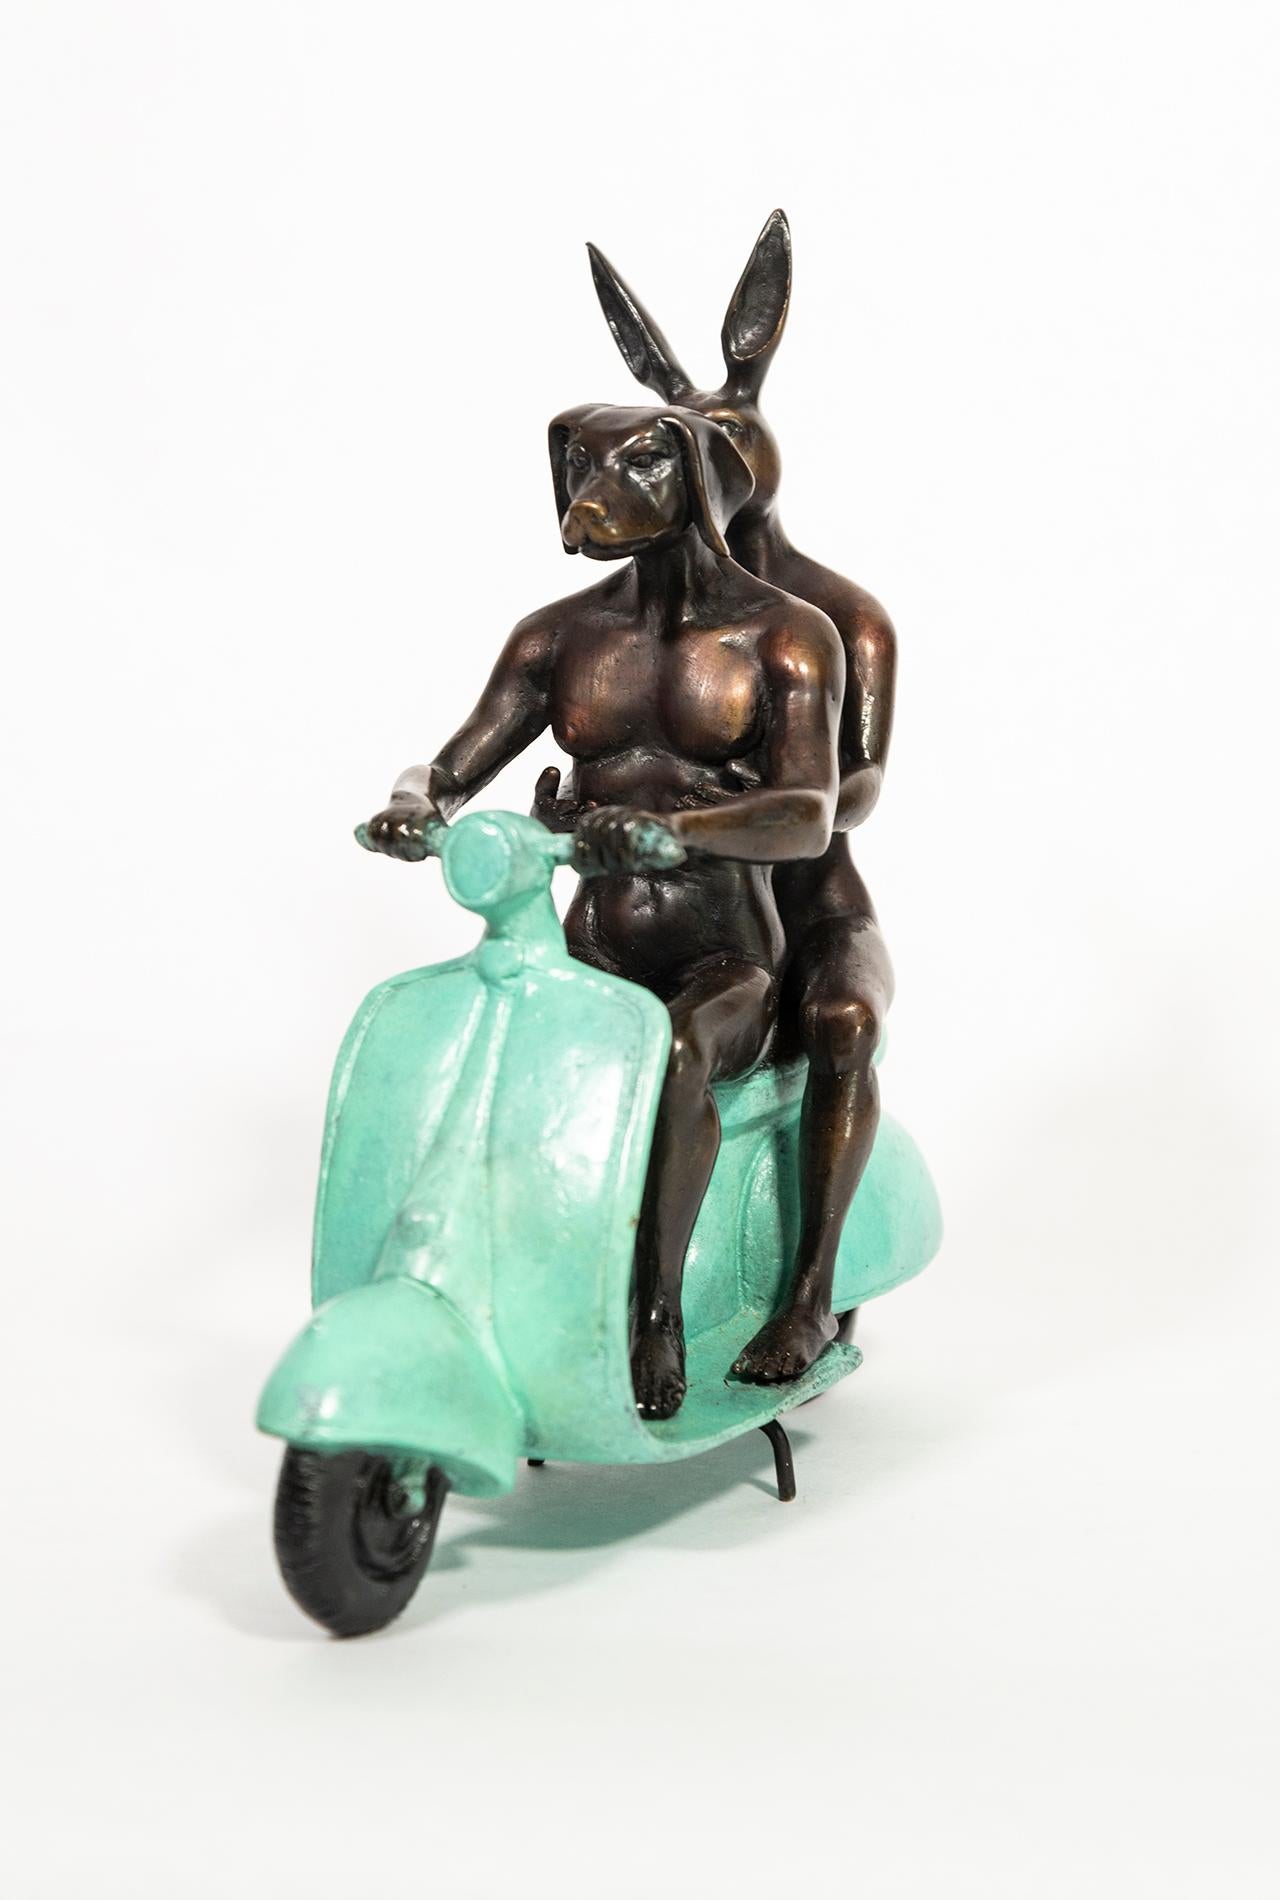 Le duo d'artistes contemporains australiens Gillie and Marc continue de créer son imagerie populaire et humoristique d'homme-chien et de femme-lapin dans cette nouvelle sculpture en bronze. Les figures humaines et animales ludiques représentent le